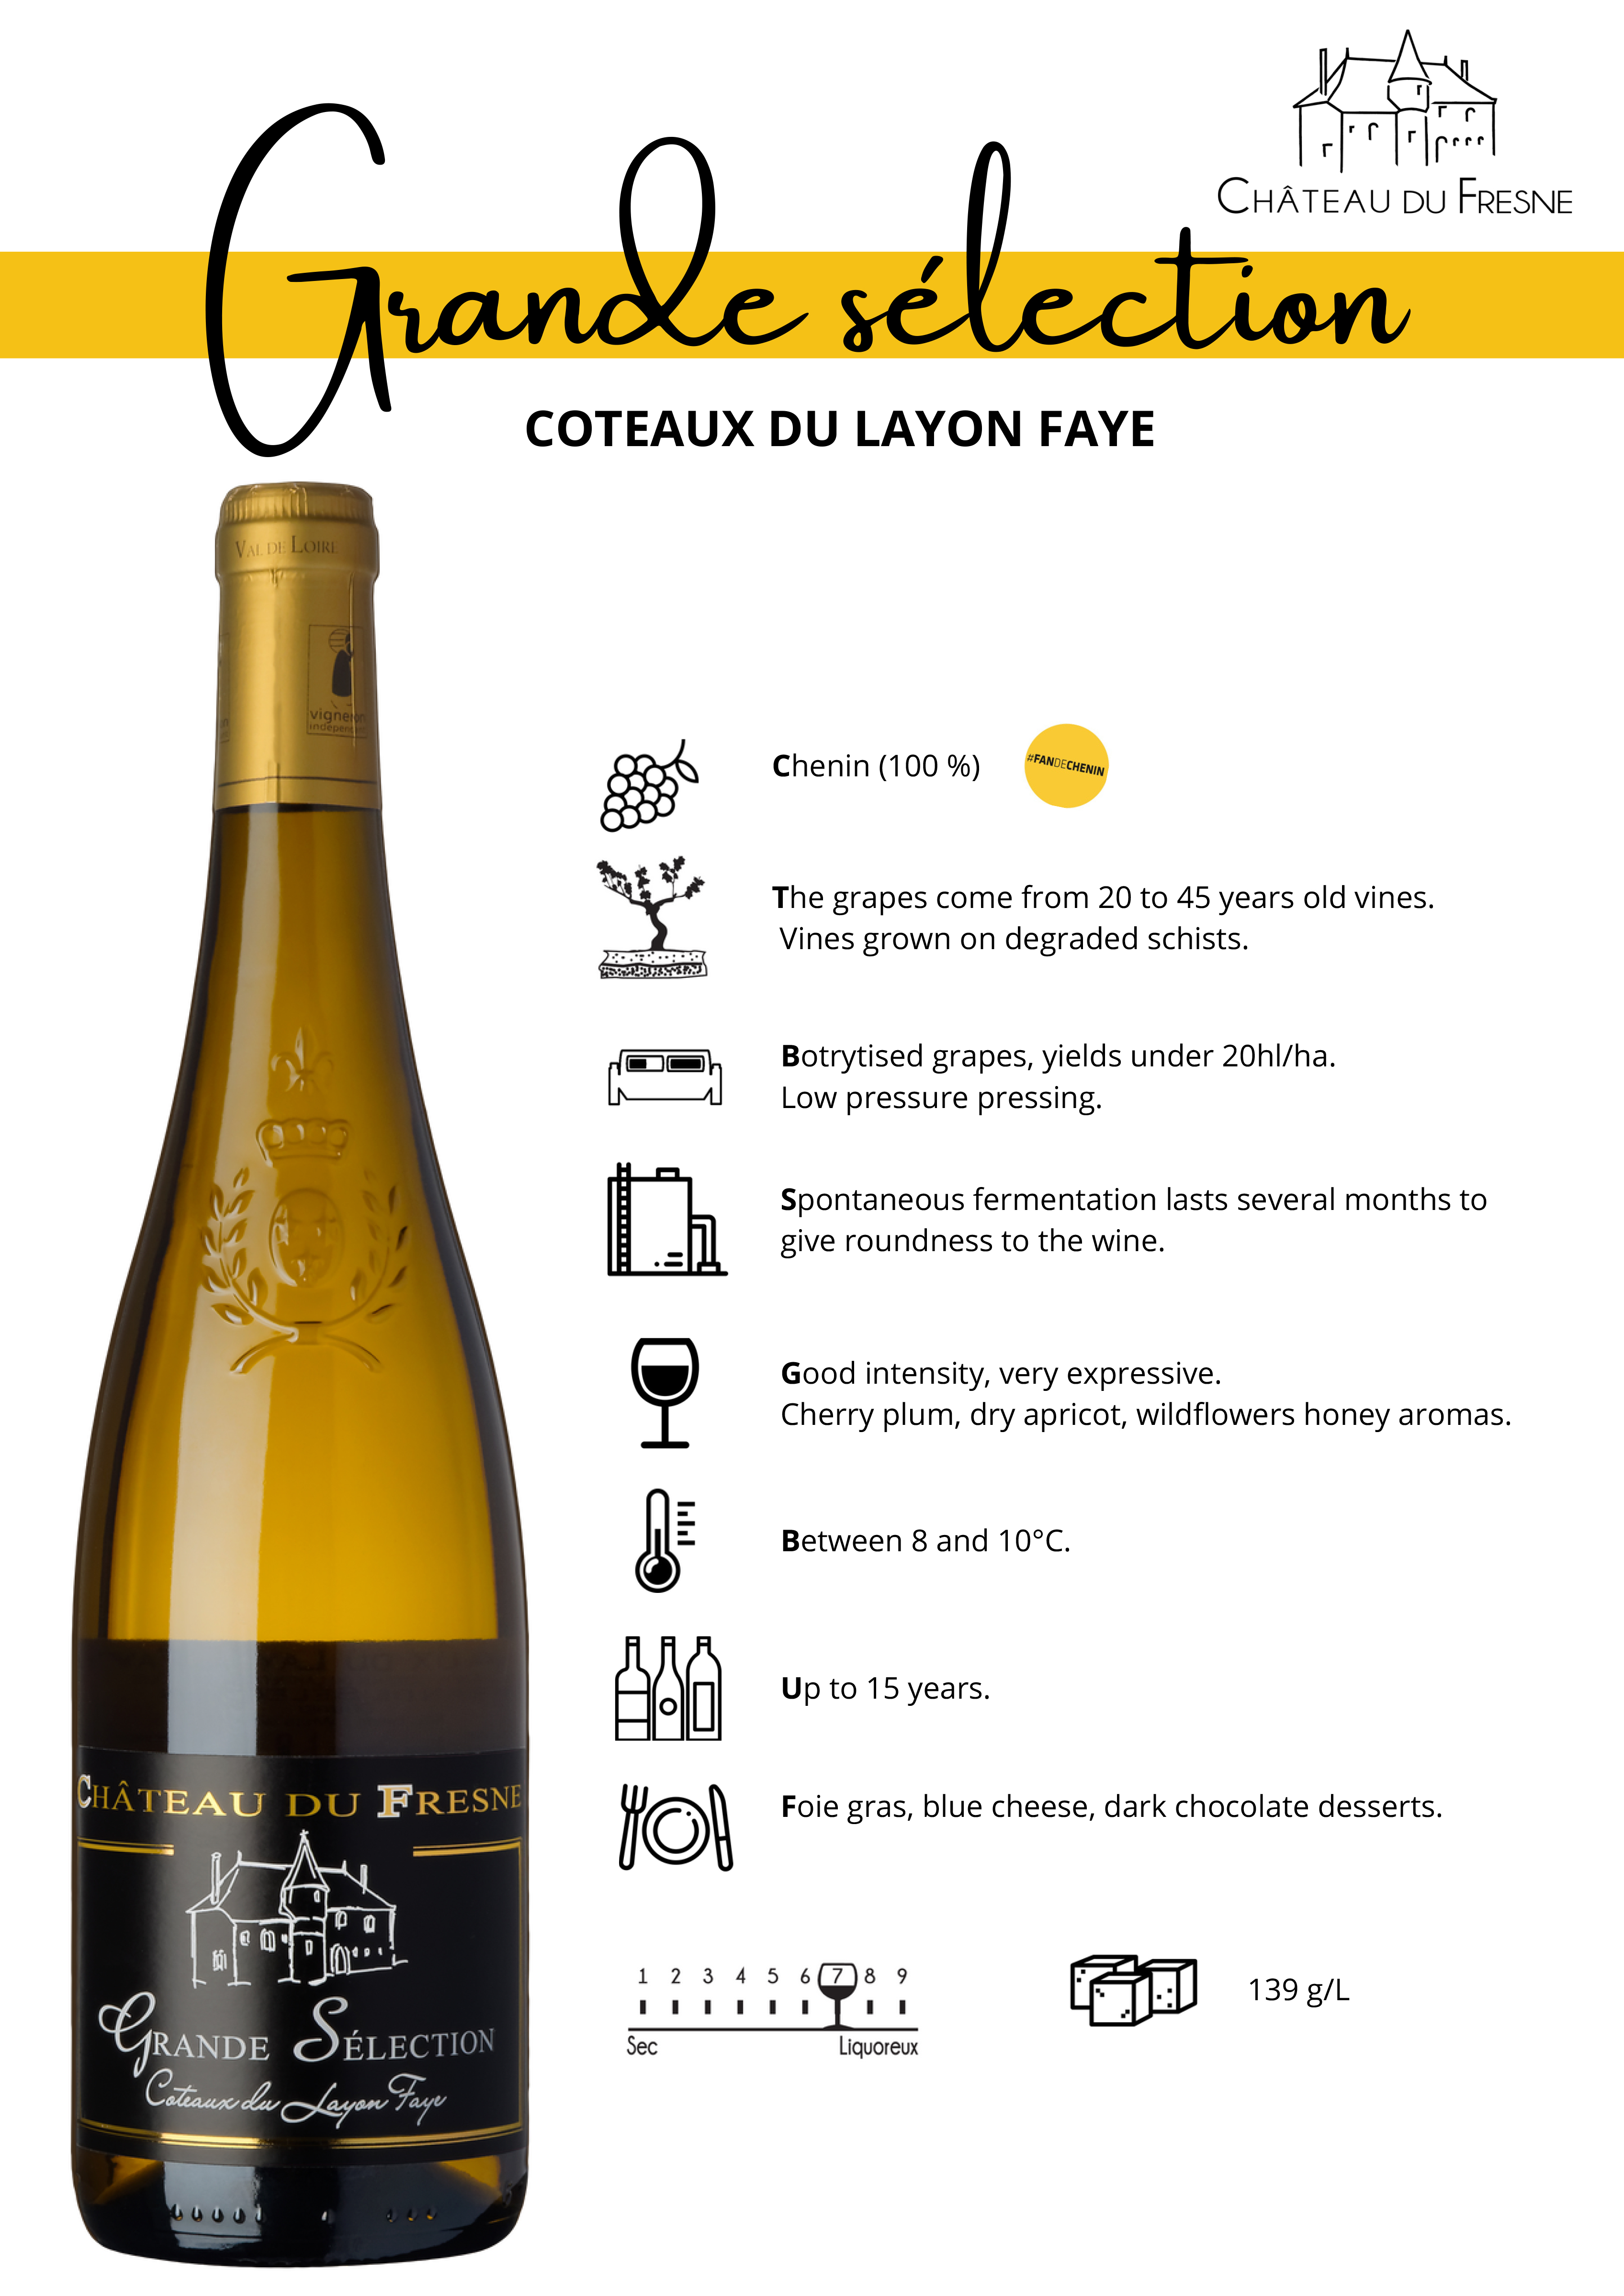 Coteaux du Layon faye Selection Vins Moelleux